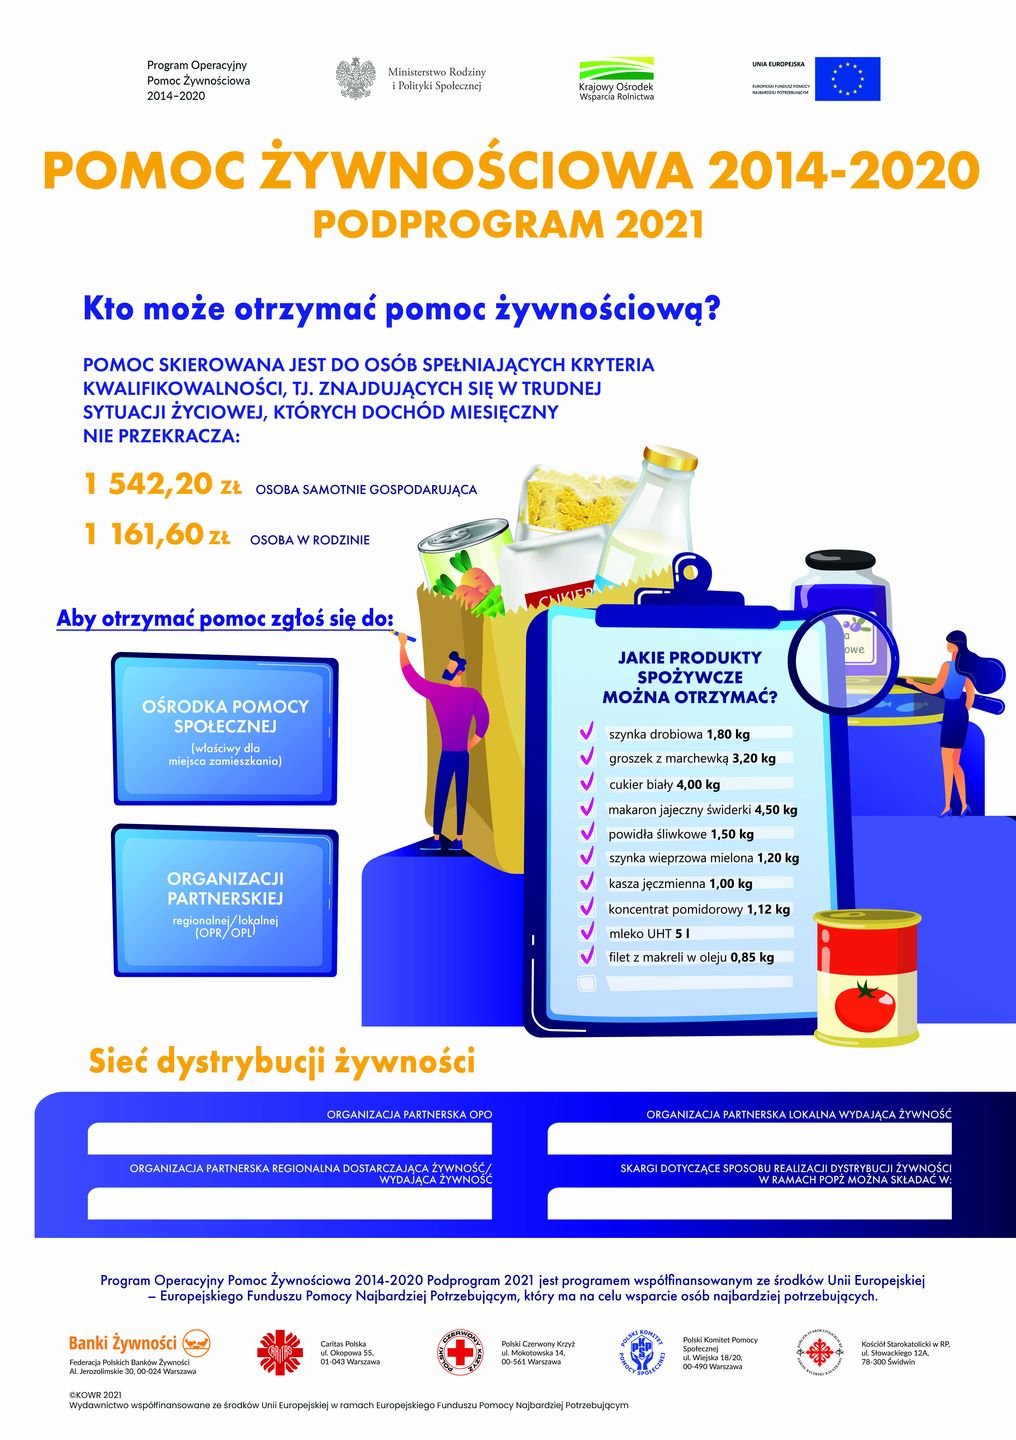 Pomoc żywnościowa 2014-2020 - program 2021